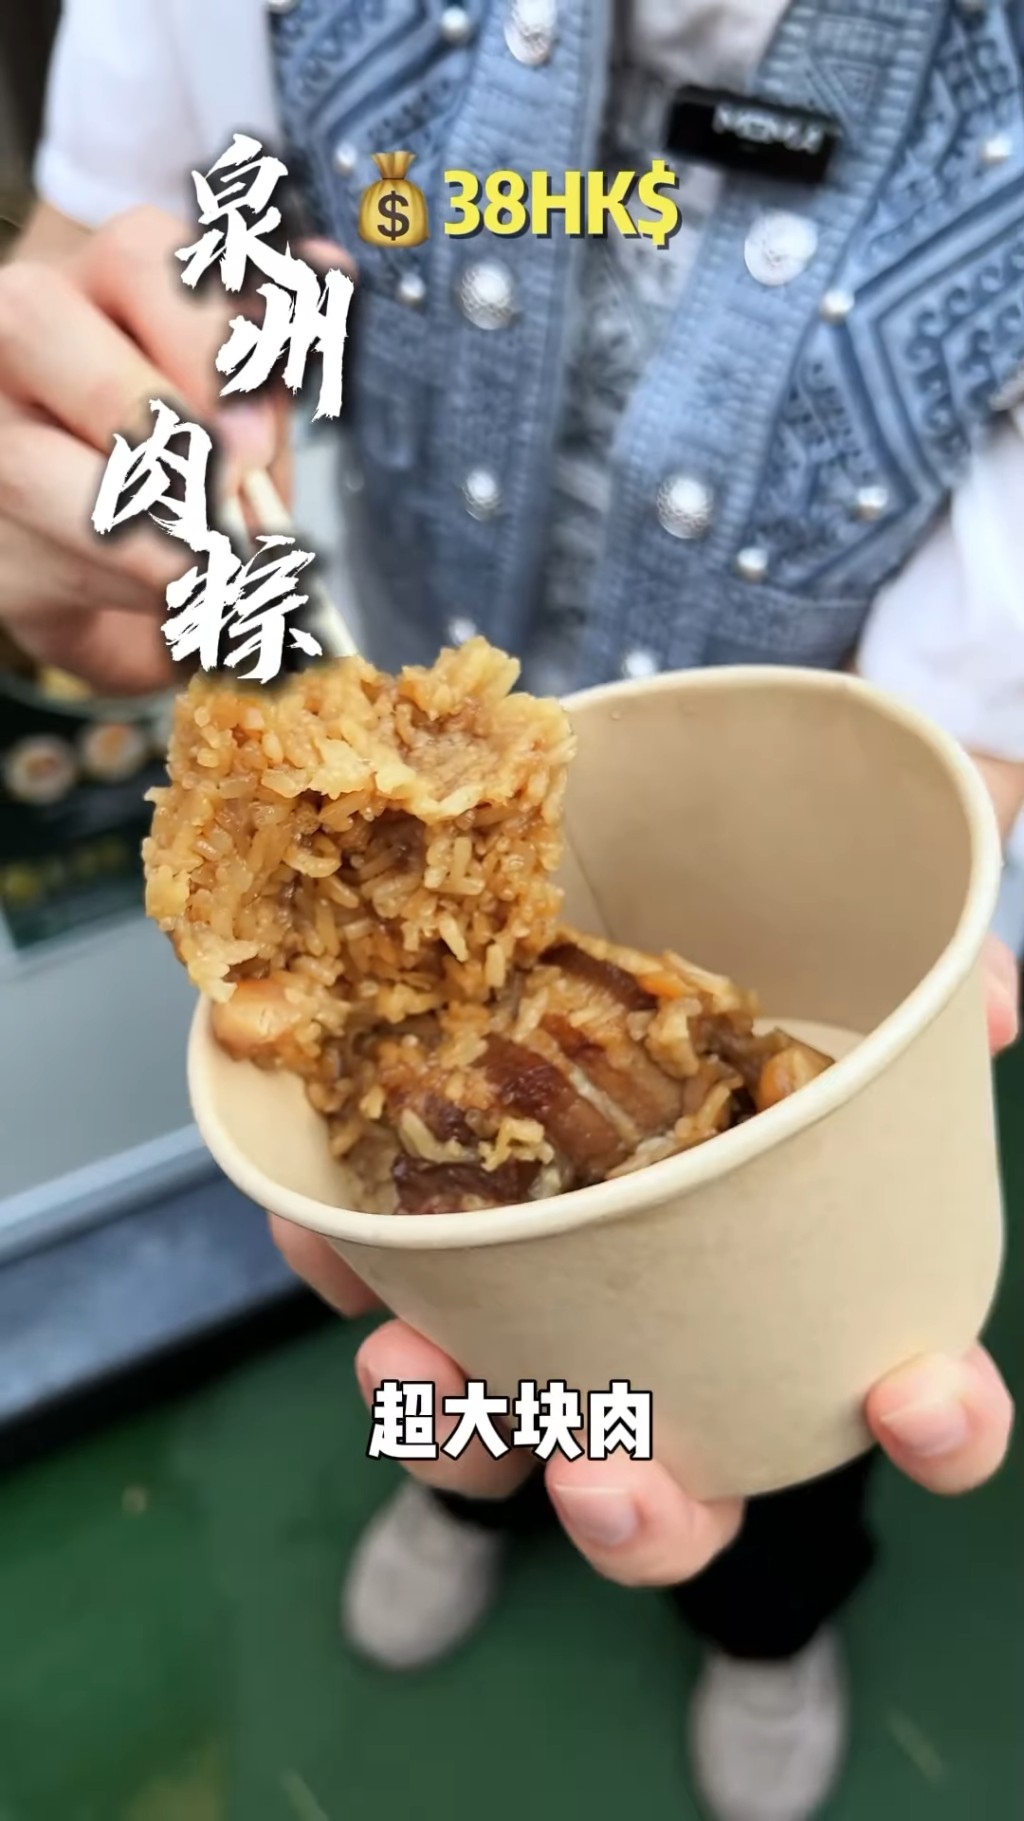 王祖蓝花38元买泉州肉糉。